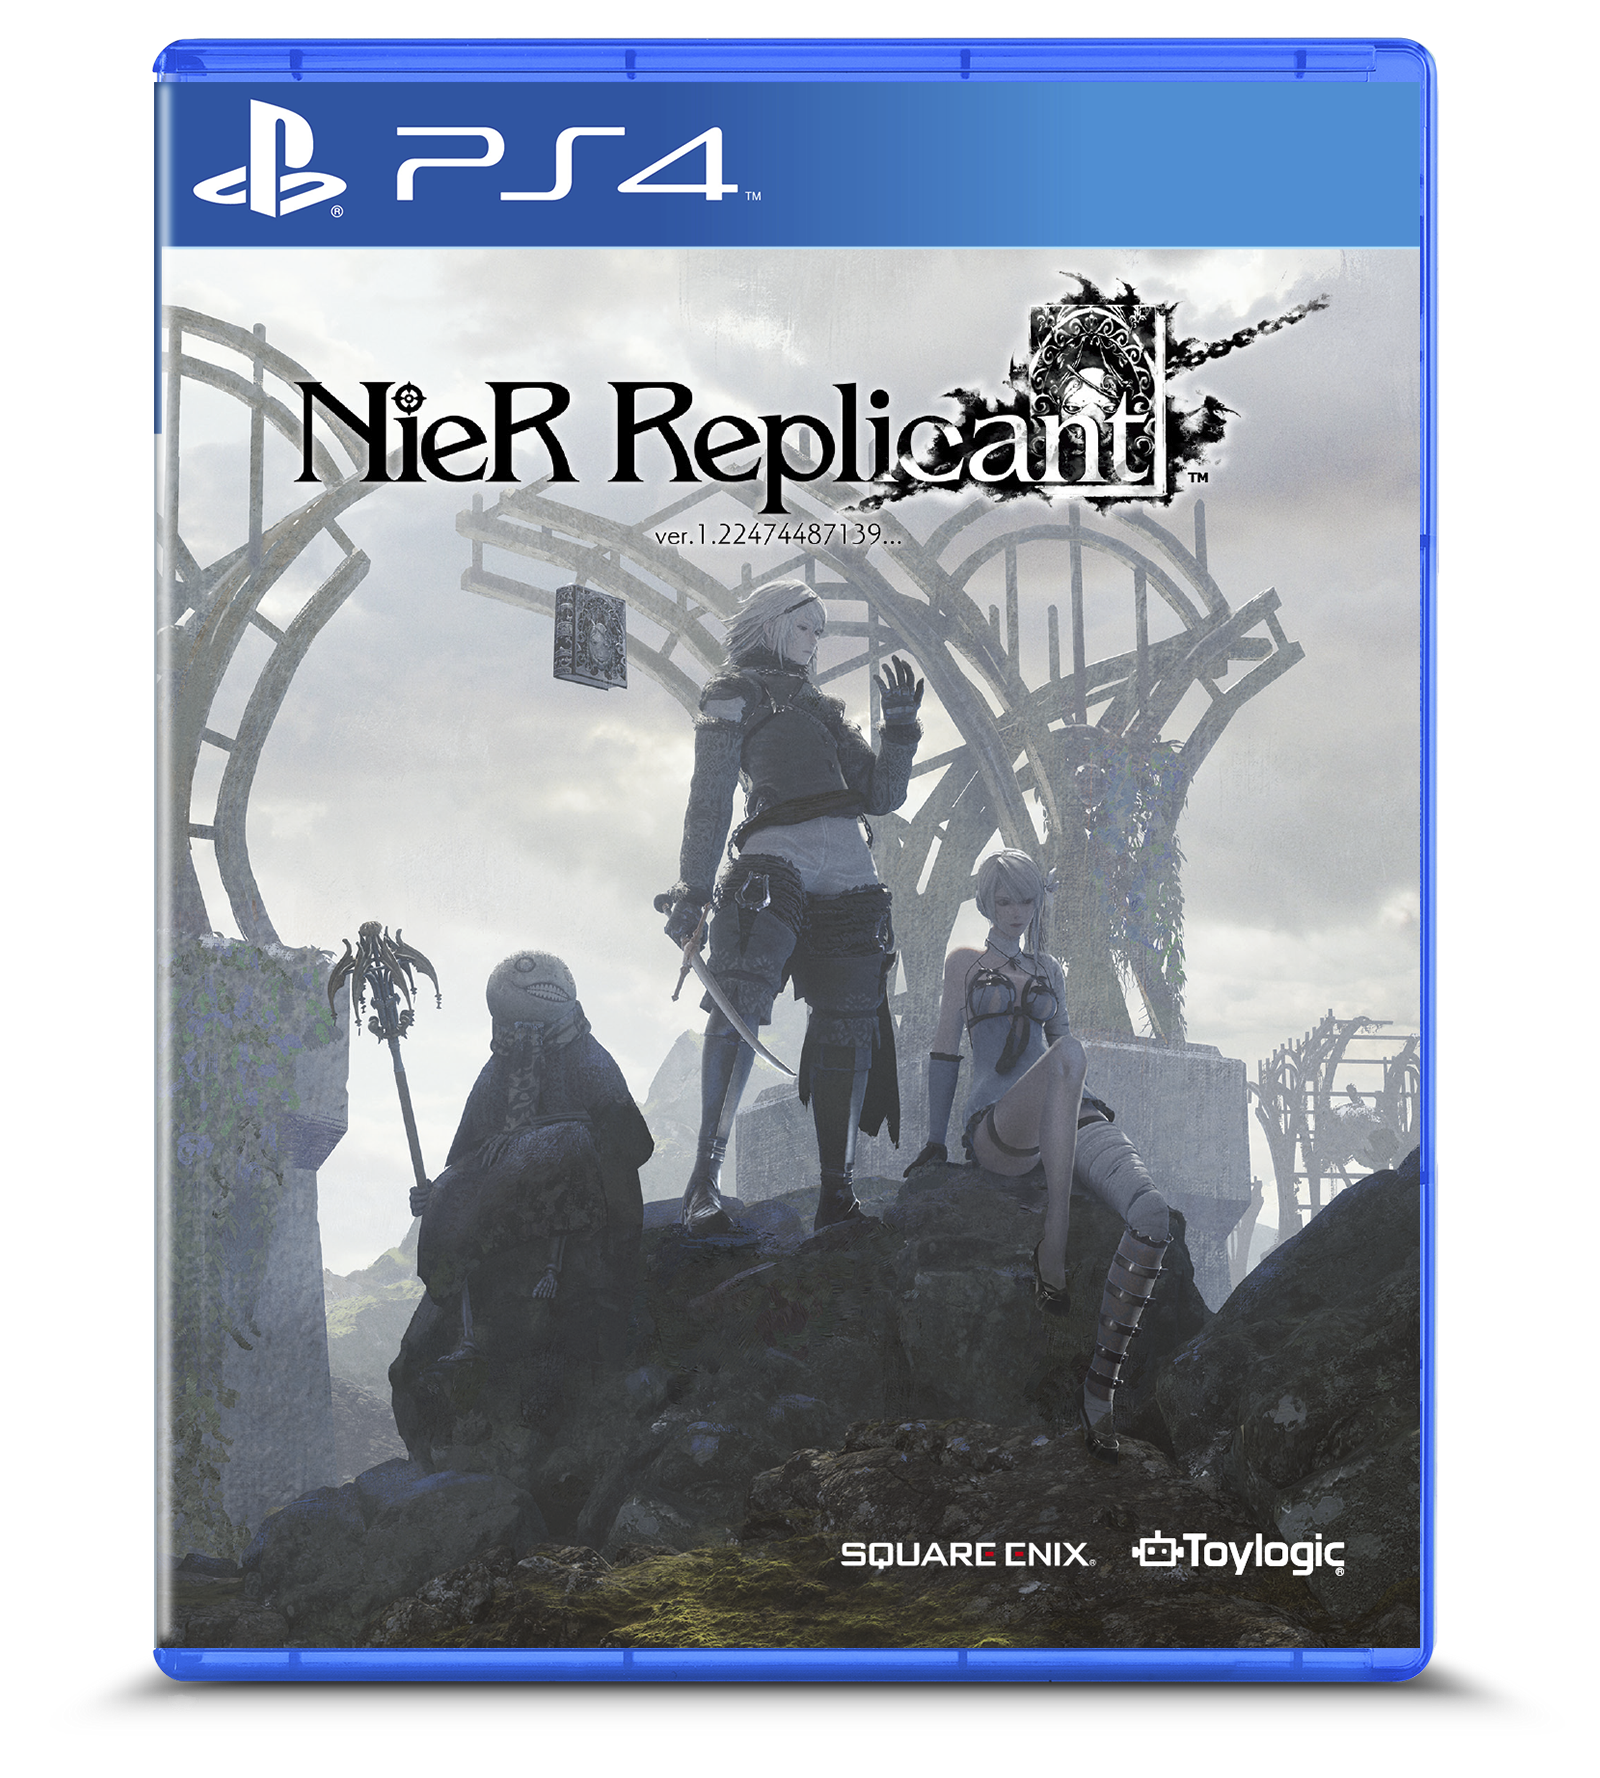 PlayStation 4 NieR Replicant ver 1.22474487139...